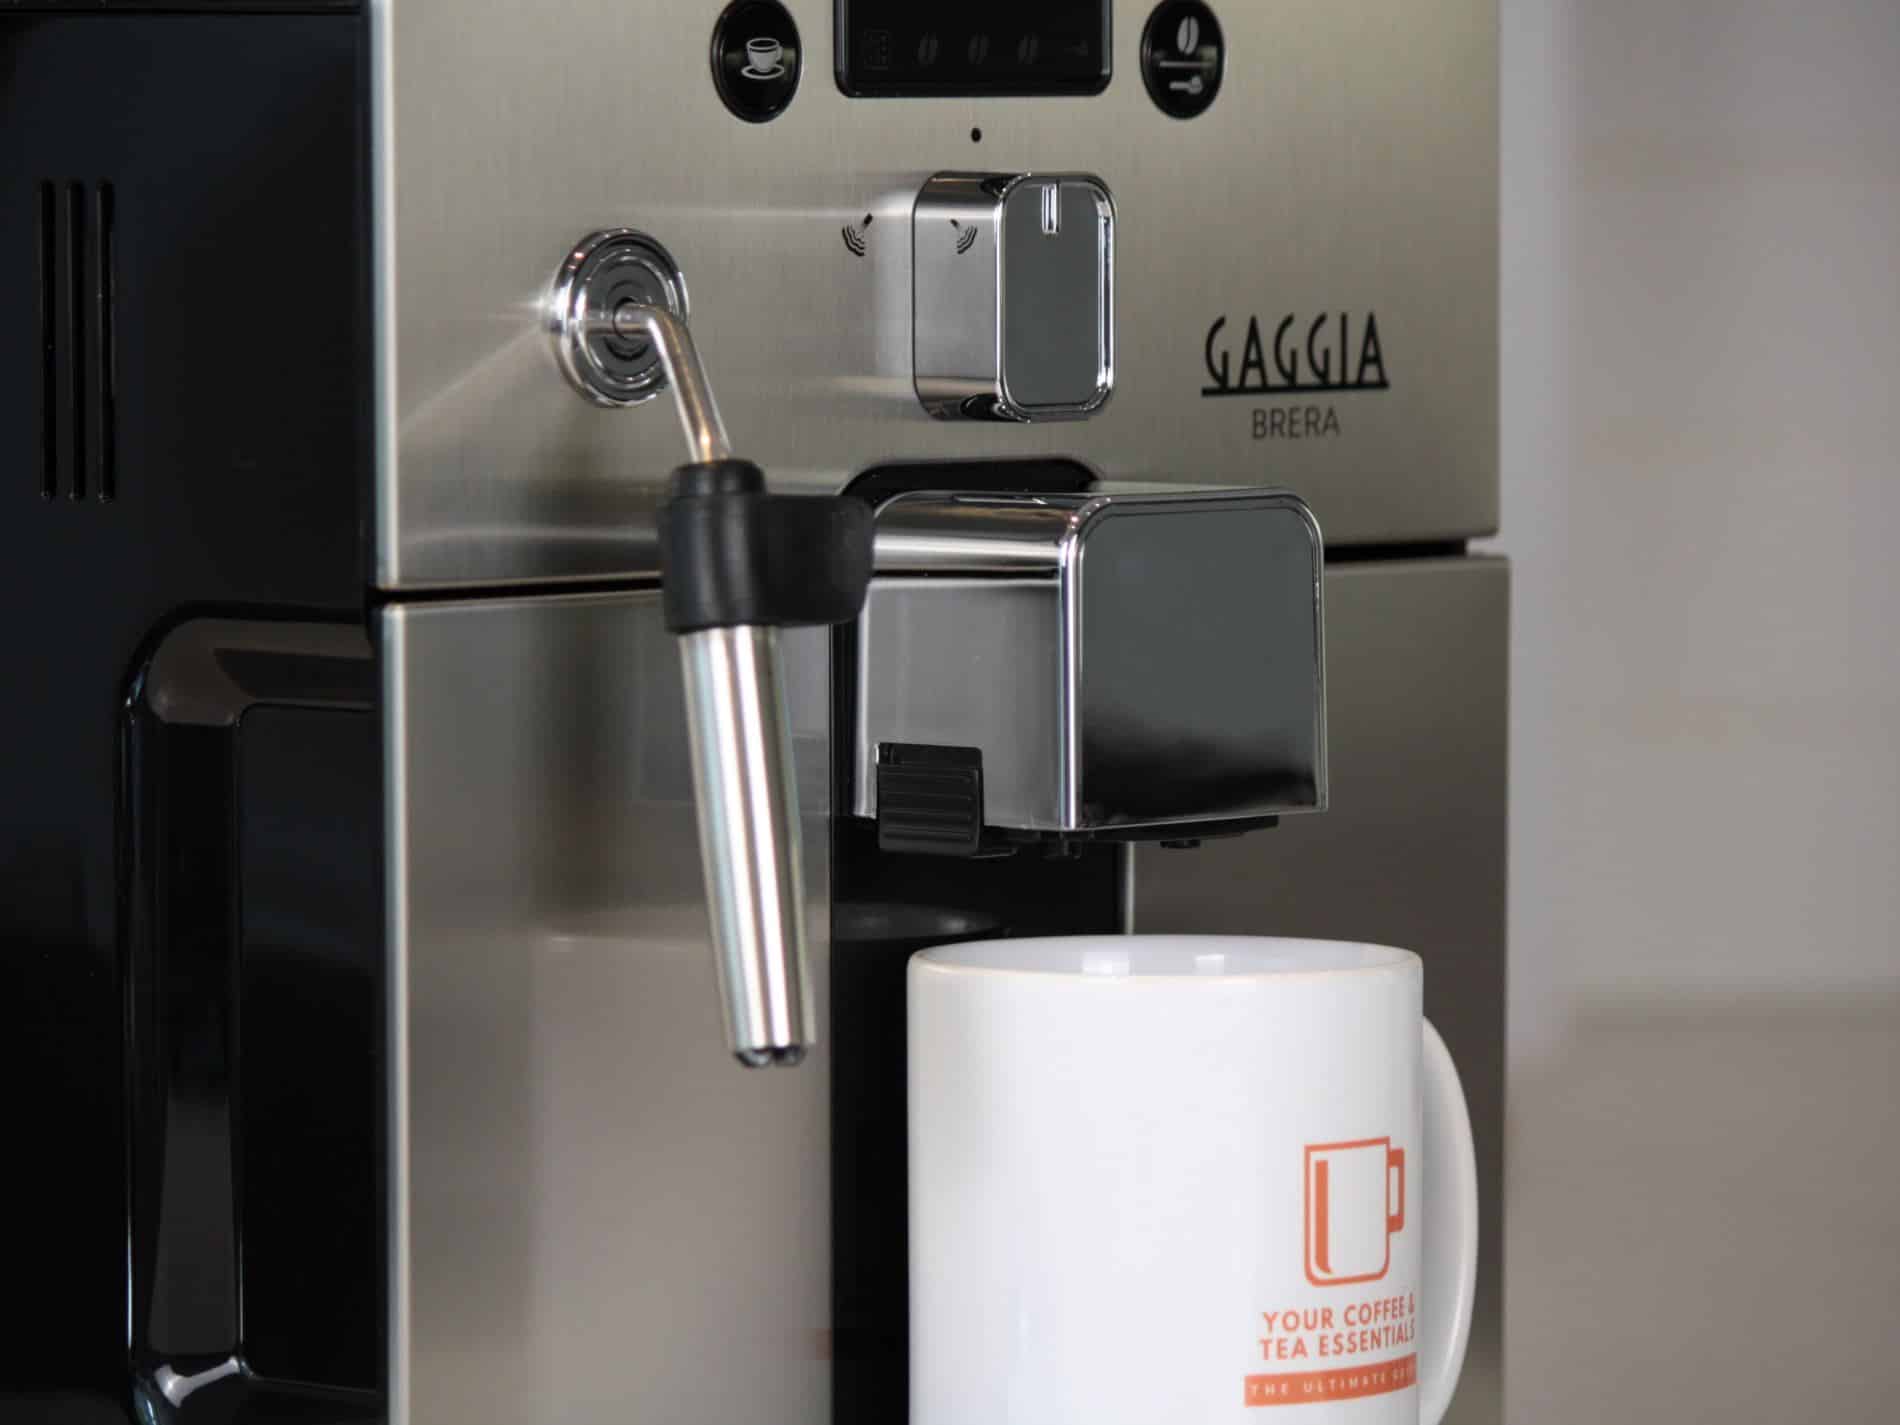 Gaggia Brera automatic espresso machine close view